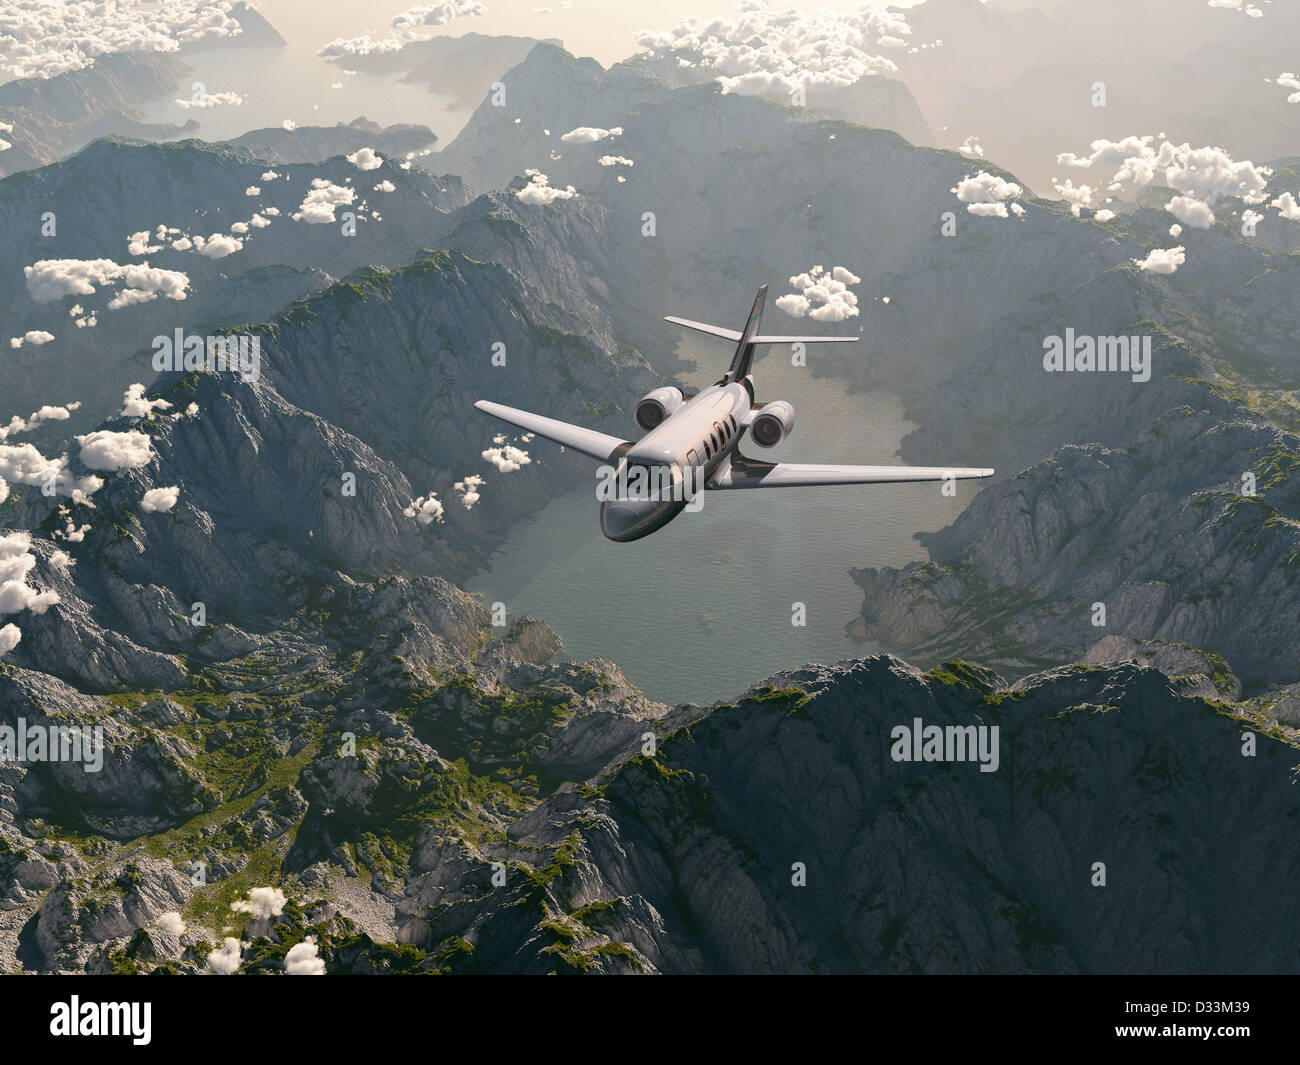 aircraft flies over a mountain range Stock Photo